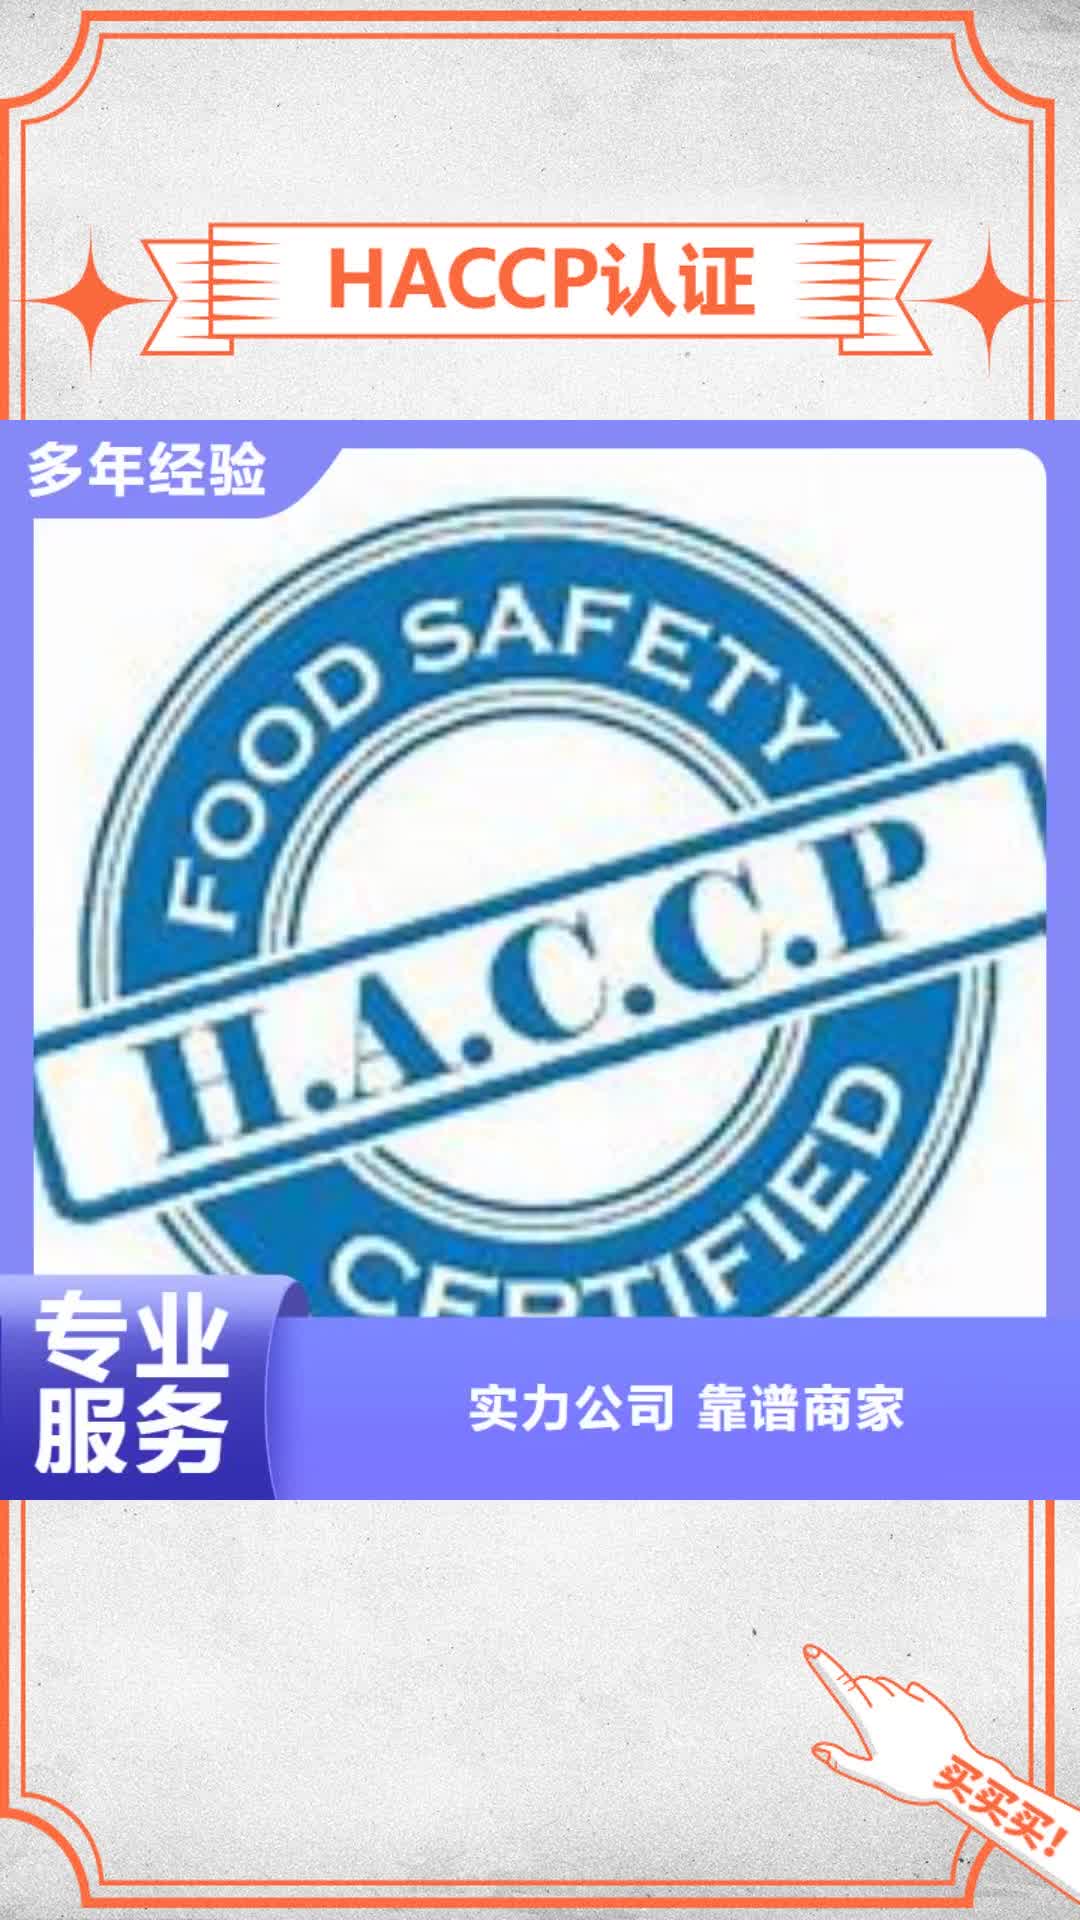 随州【HACCP认证】ISO10012认证服务热情